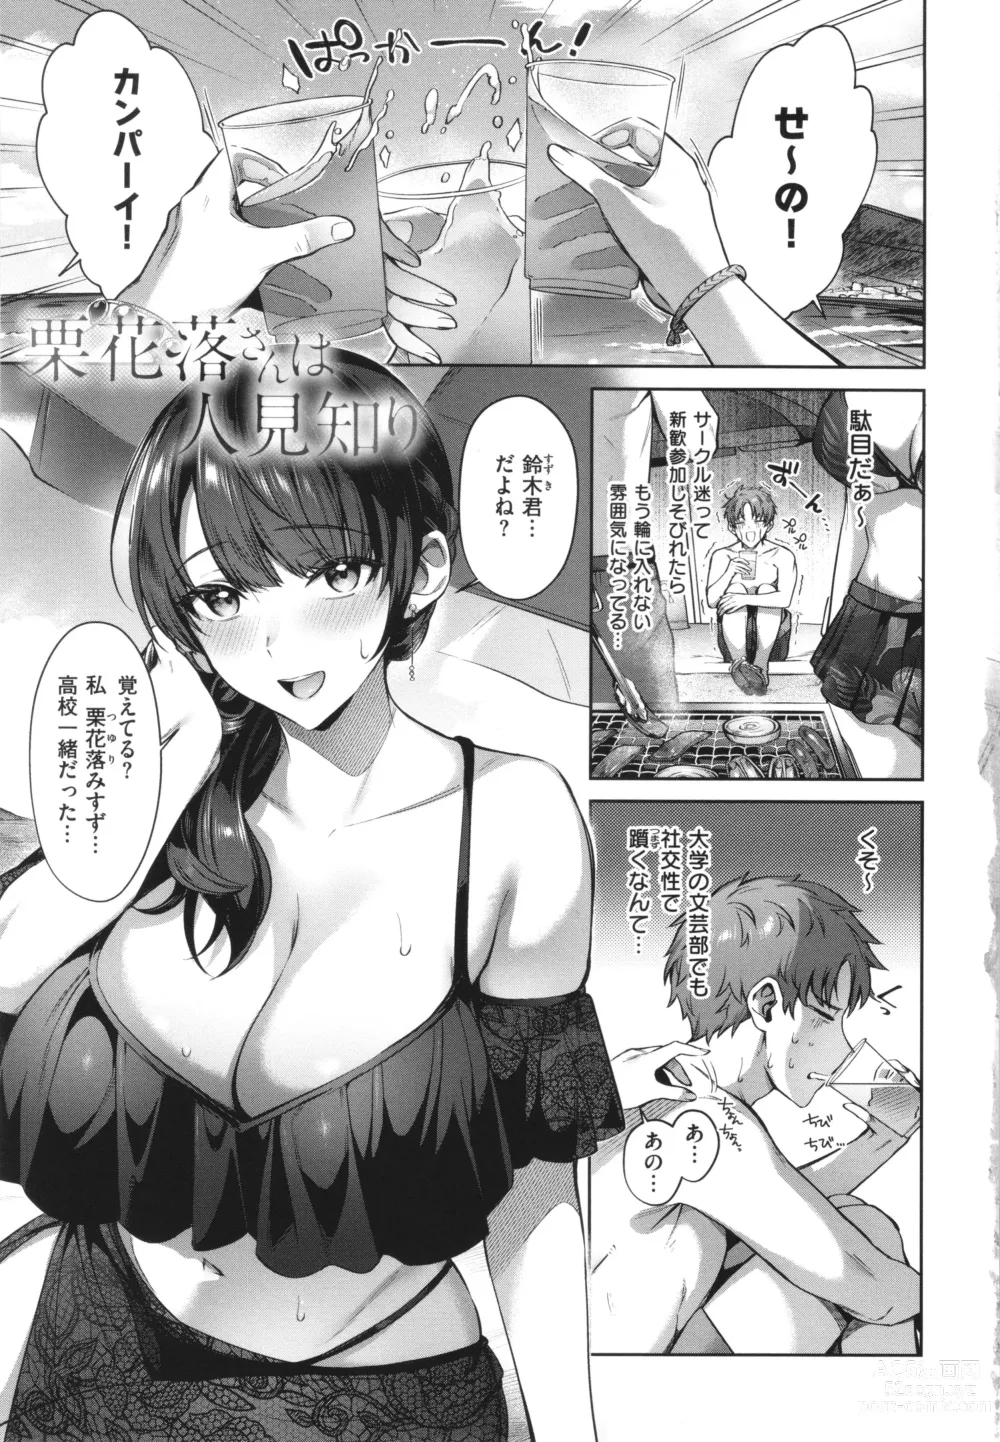 Page 7 of manga Tsubomi Zakari